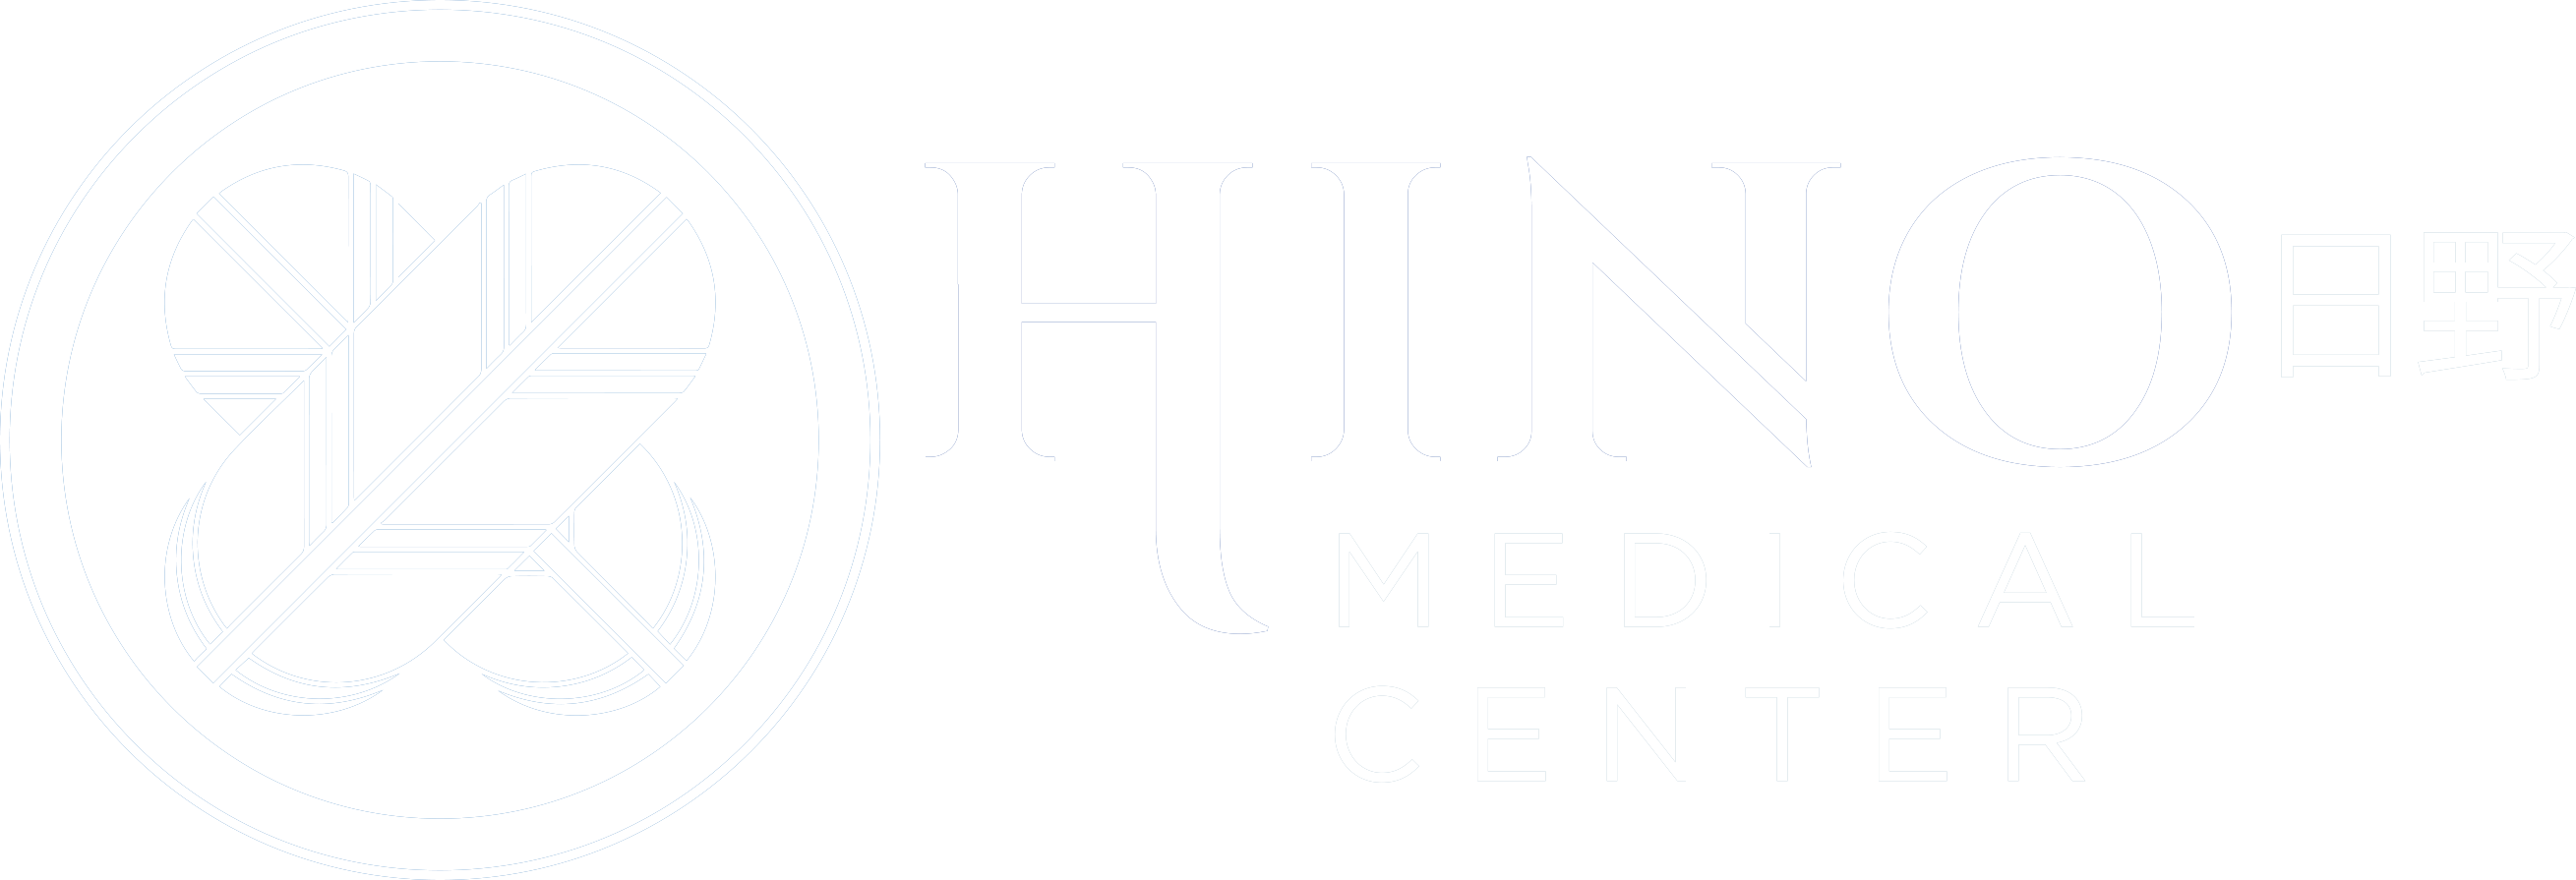 Hino Medical Center